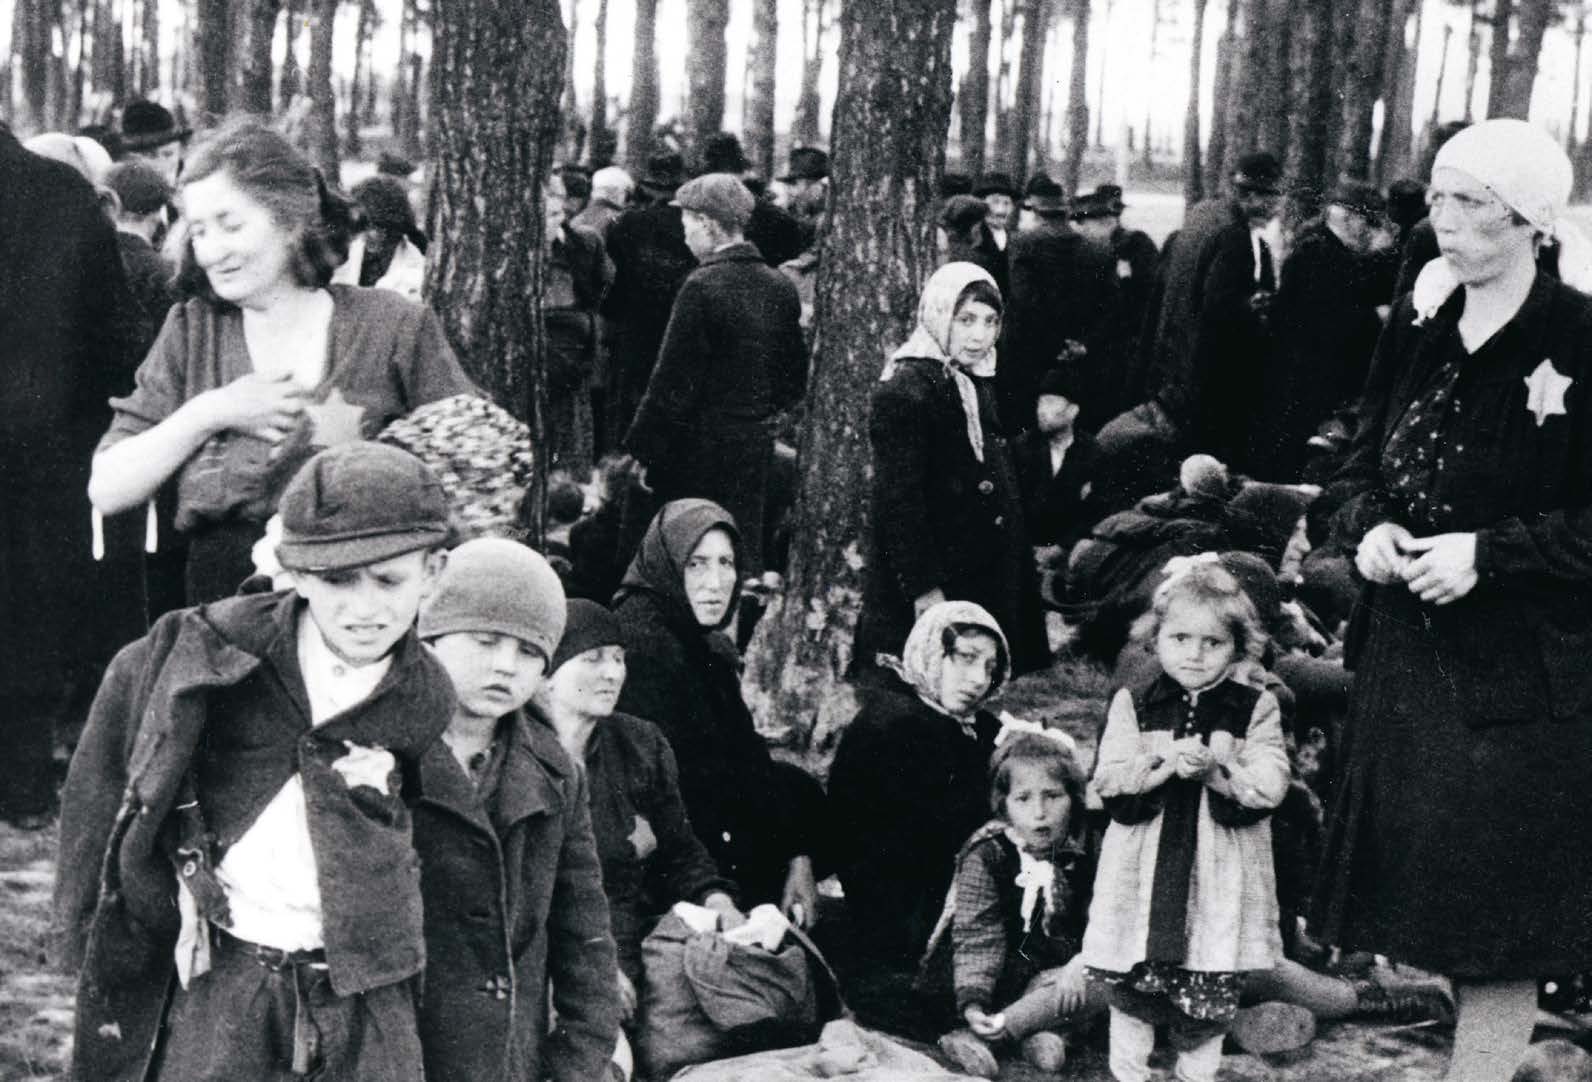 En äldre svartvit bild föreställlande en grupp vuxna och barn som befinner sig i ett skogsområde. Alla ser allvarliga ut.